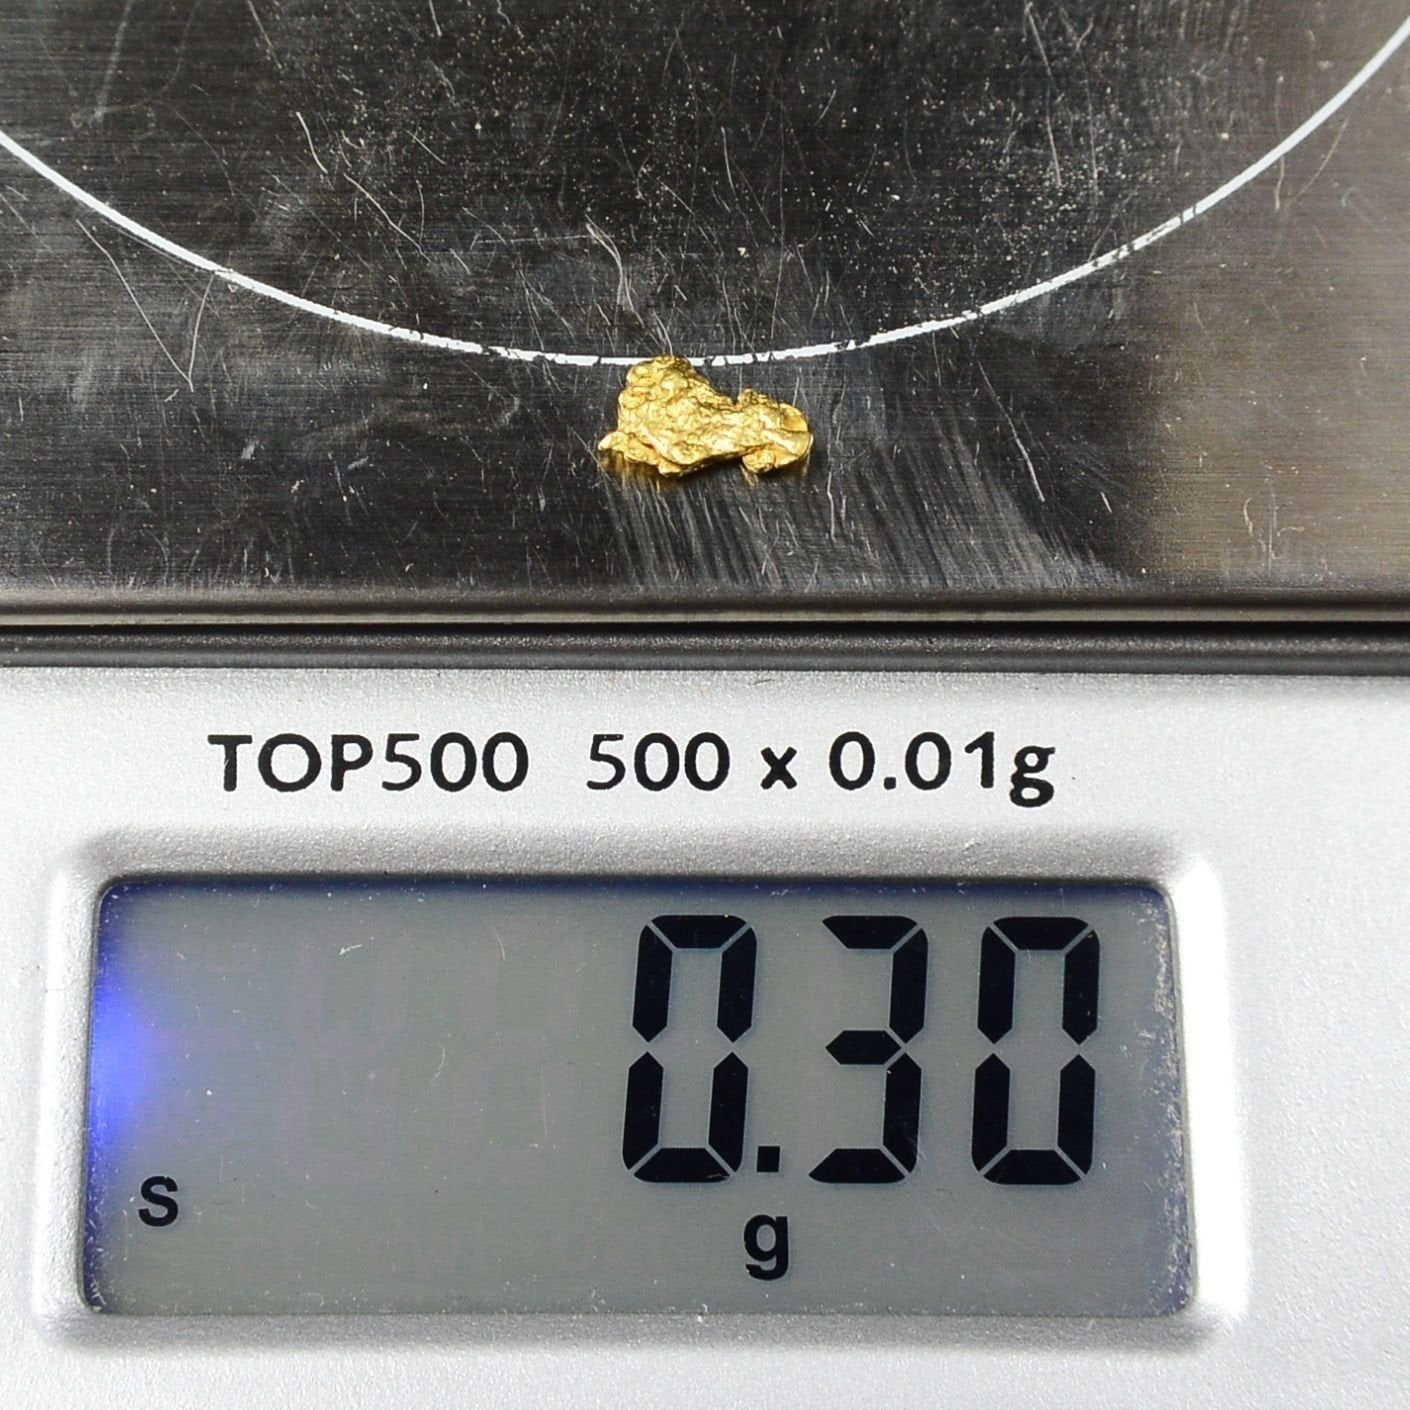 Alaskan-Yukon Bc Gold Rush Natural Nugget 0.30 Grams Genuine Alaska .10-.34